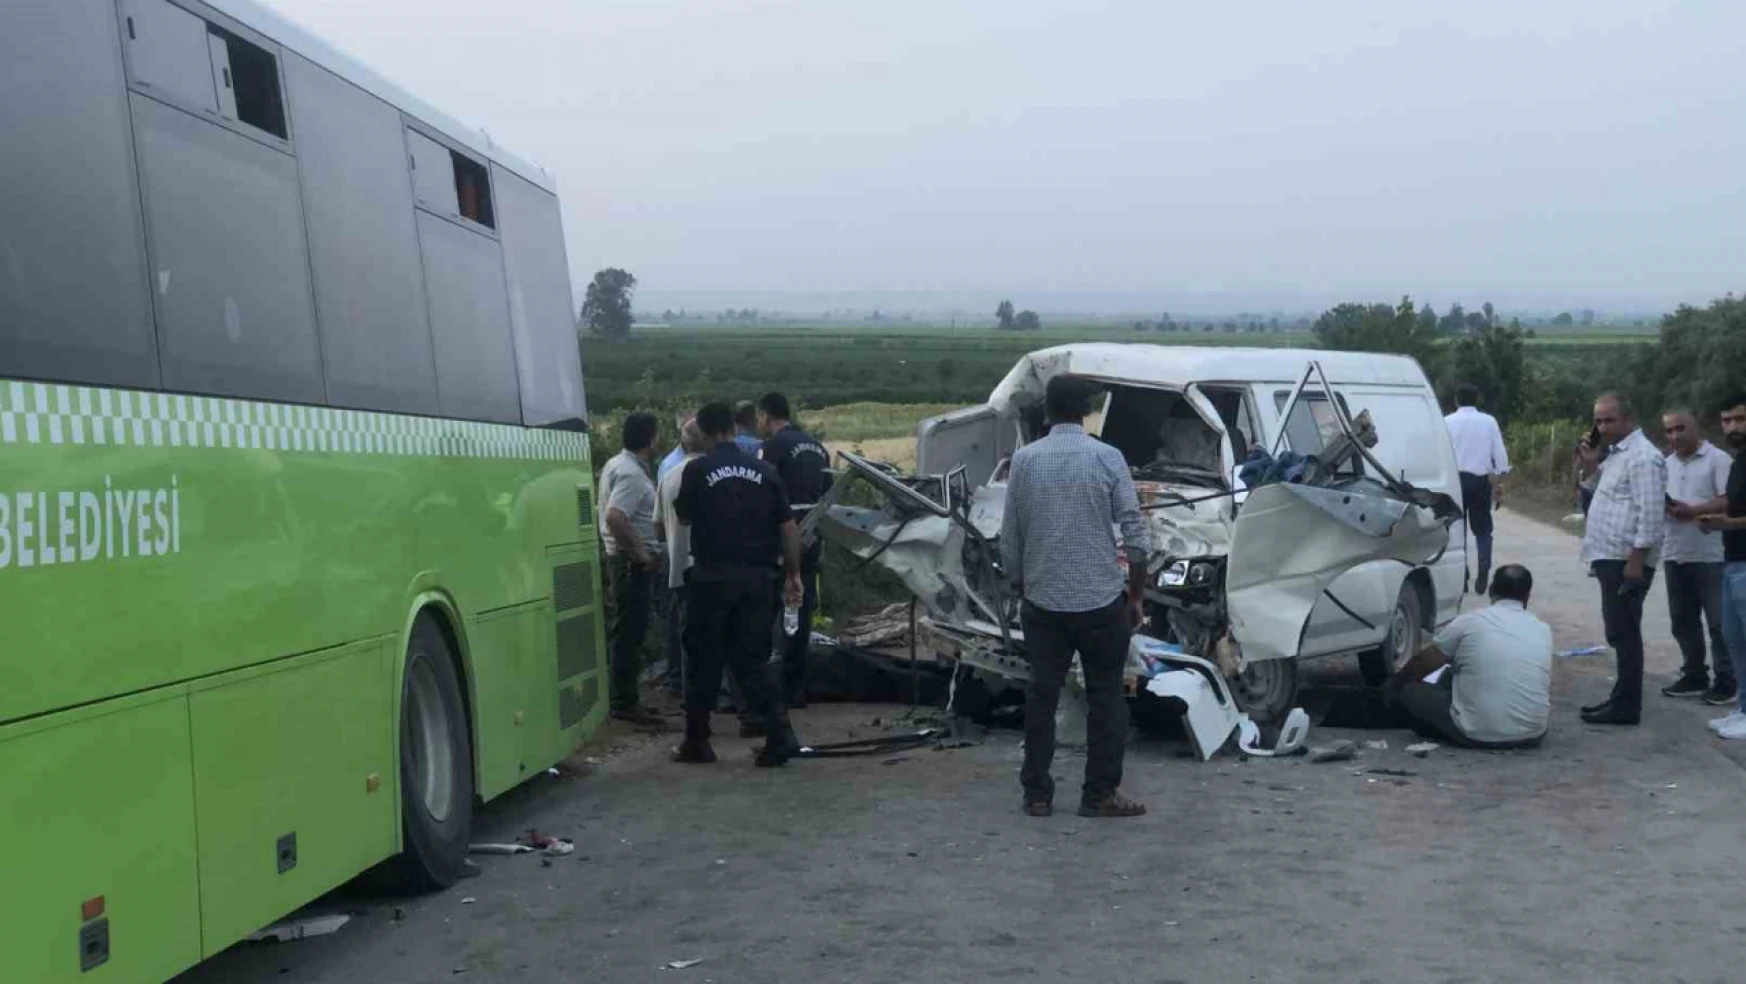 Adana'da belediye otobüs ile panelvan araç çarpıştı: 2 ölü, 10 yaralı